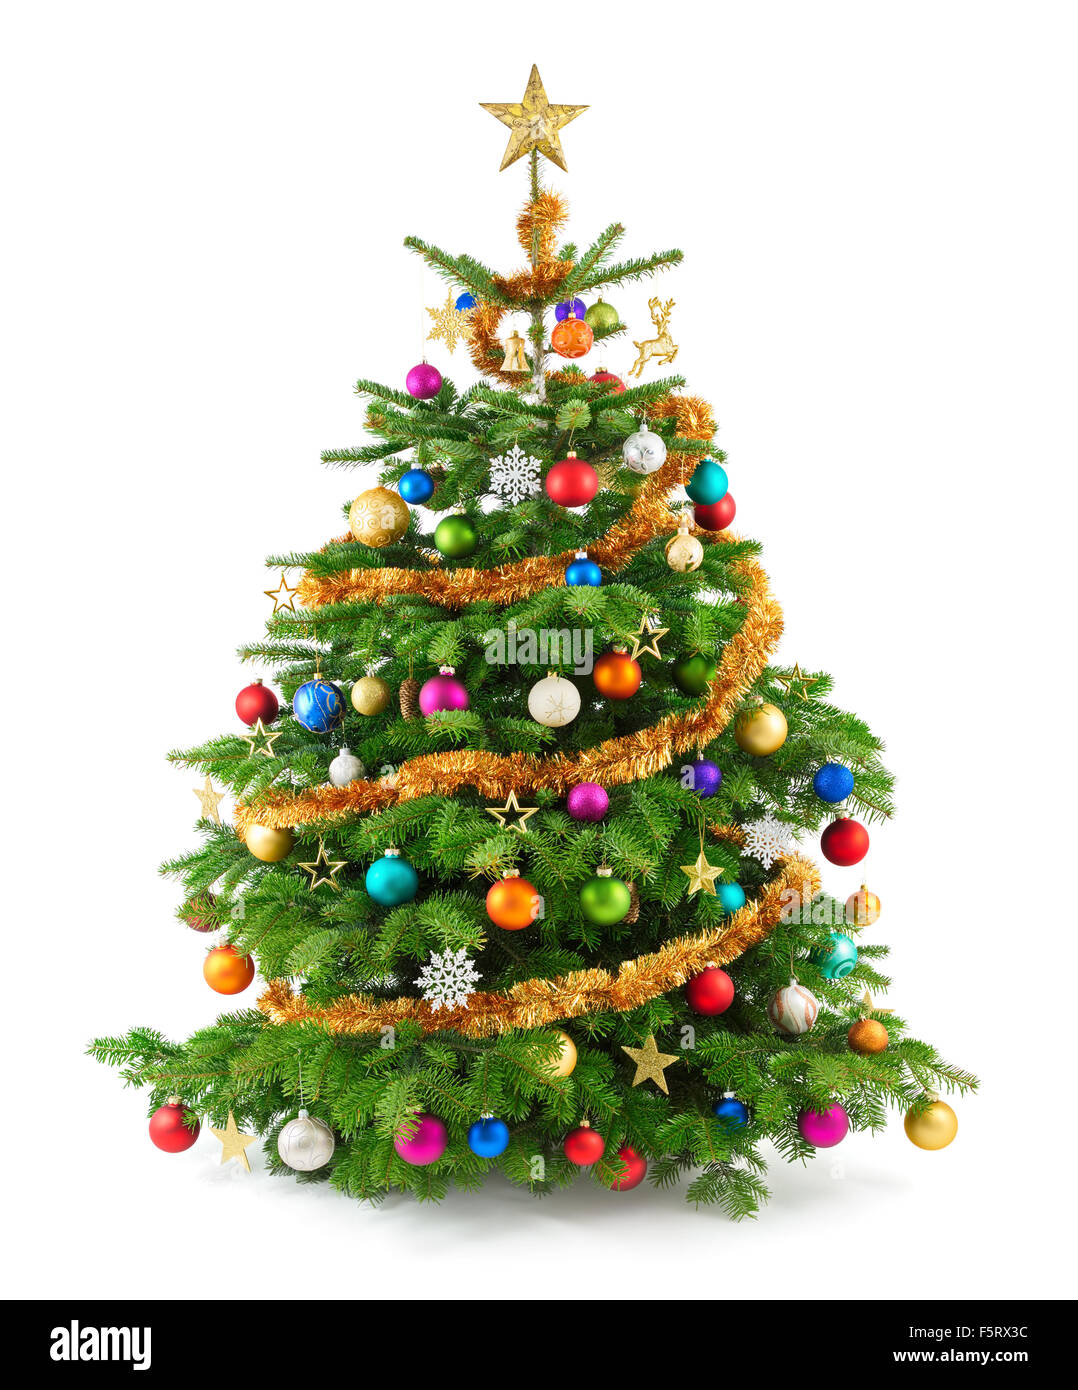 Studio shot joyeux d'un arbre de Noël avec des ornements colorés, isolated on white Banque D'Images